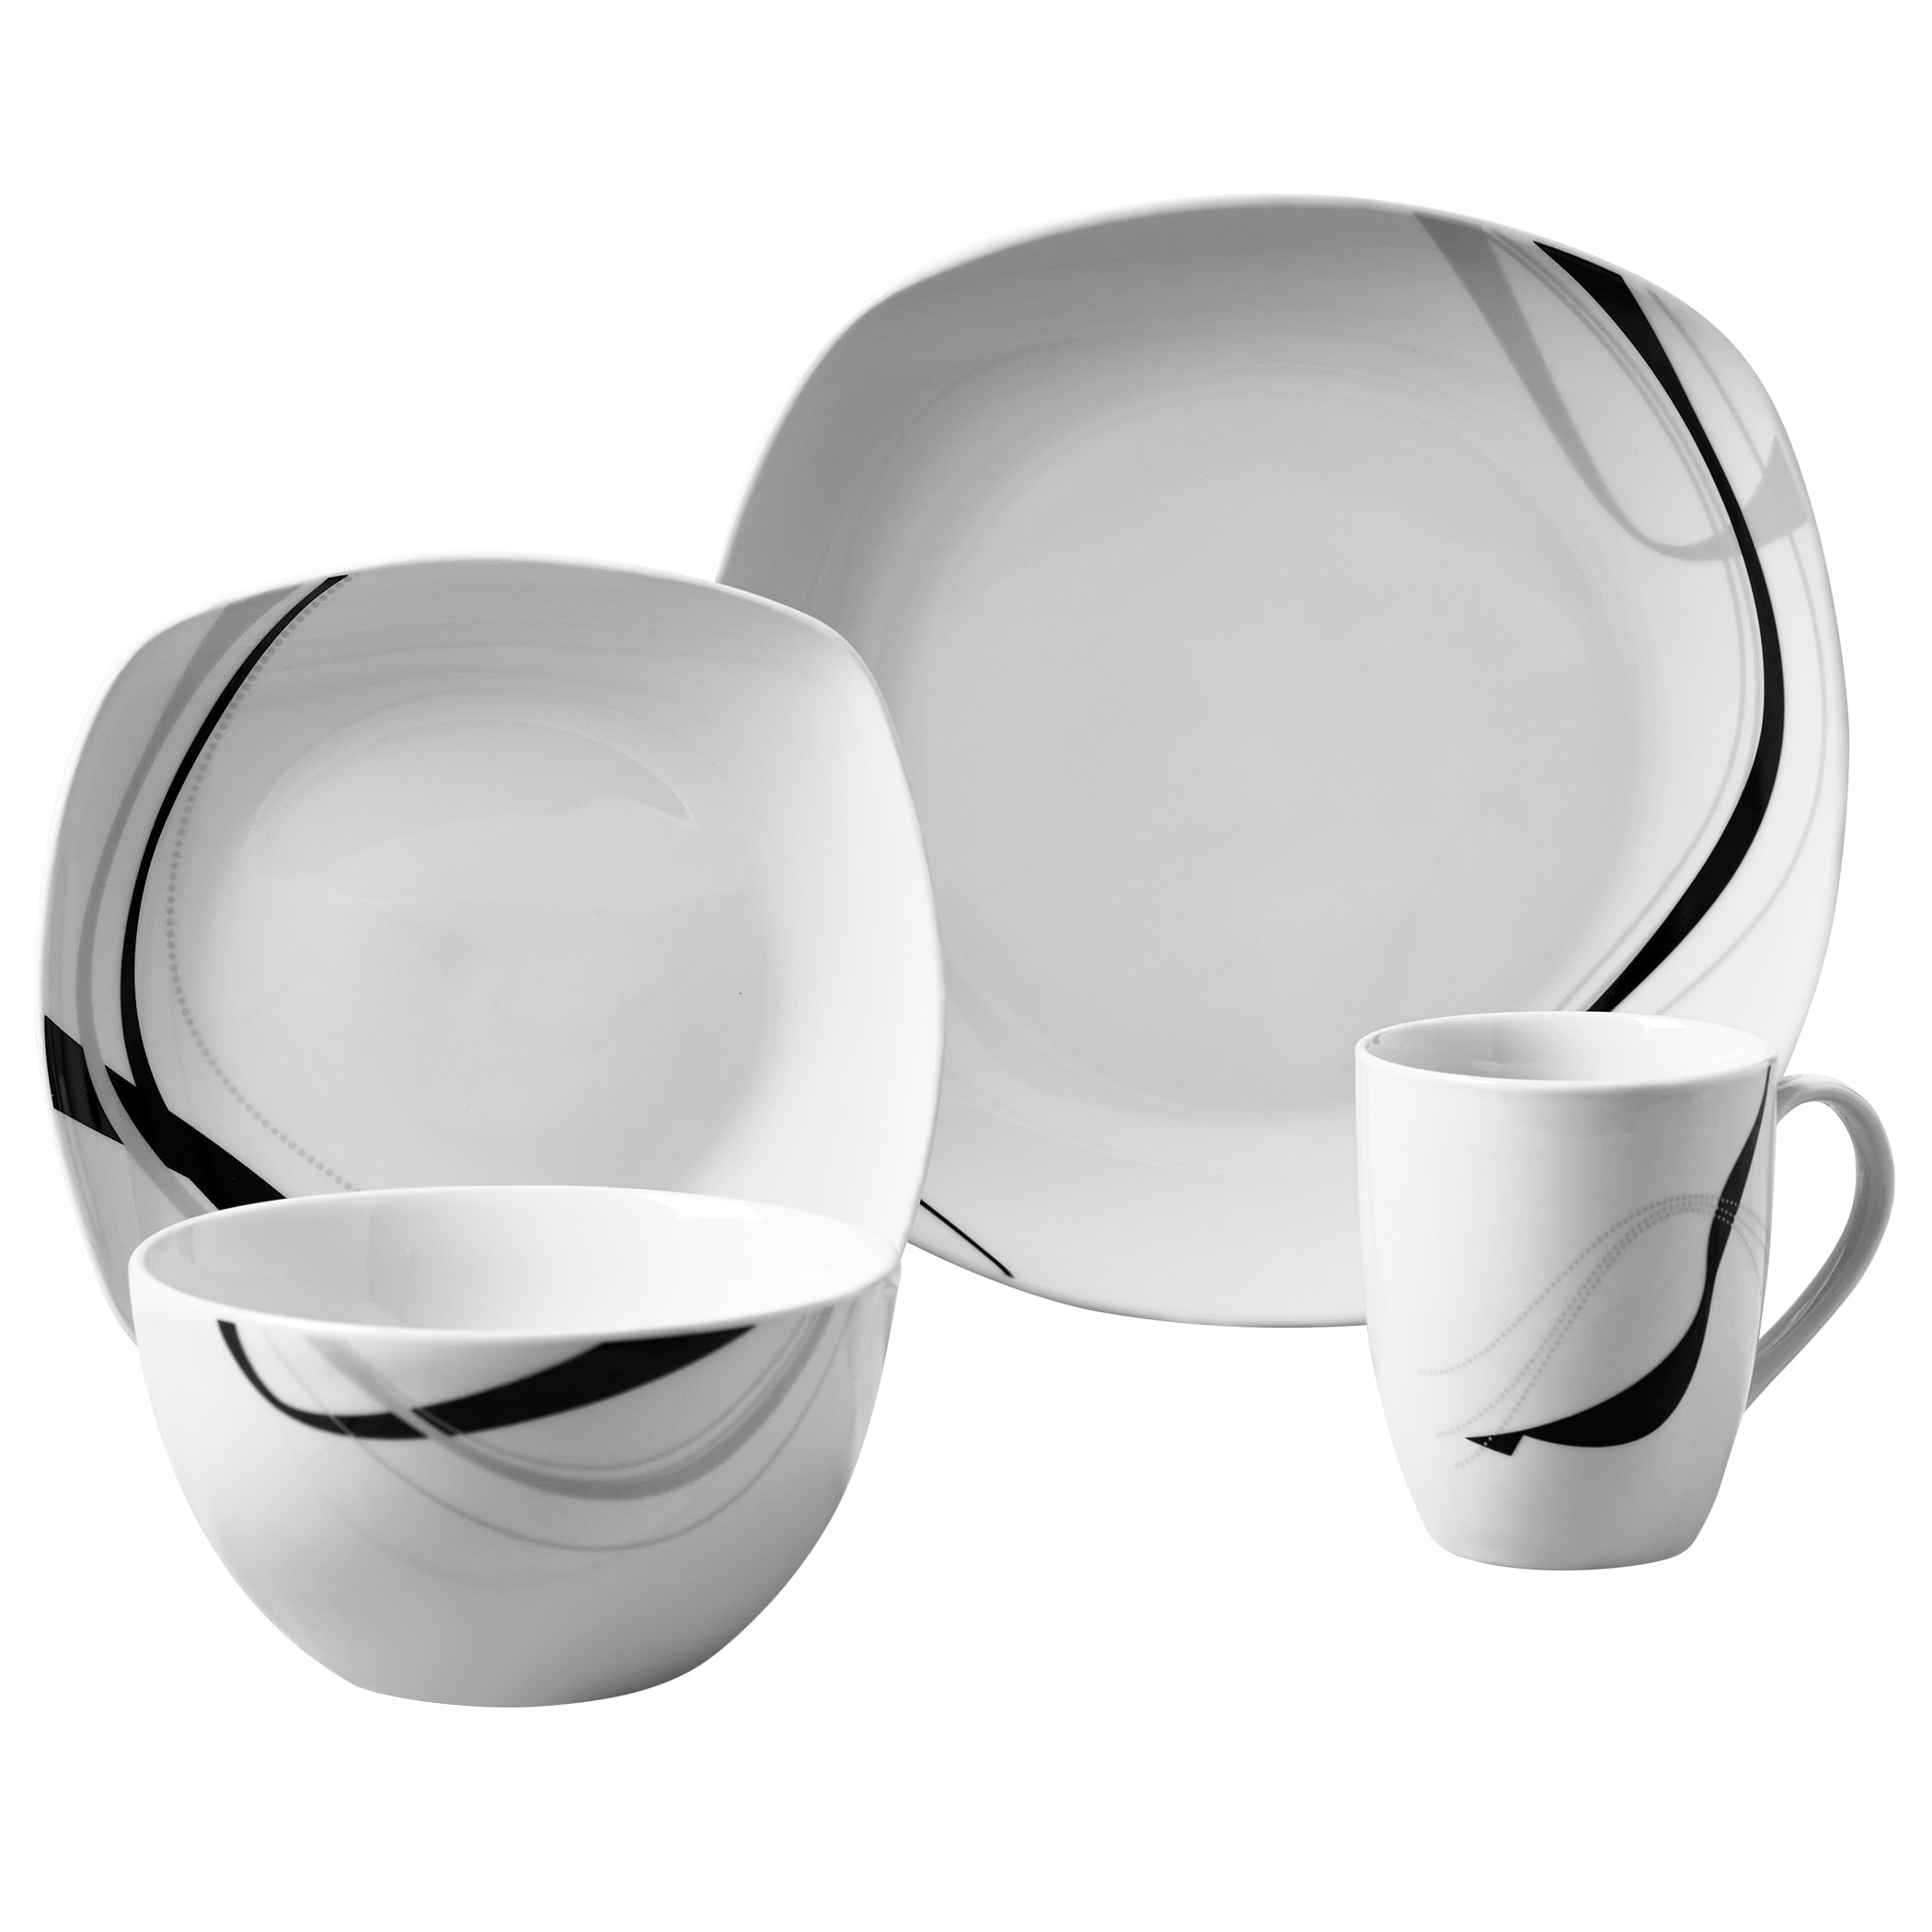 MALACASA, Series Dennis, 6-Piece Glassware Coffee Set Dinnerware